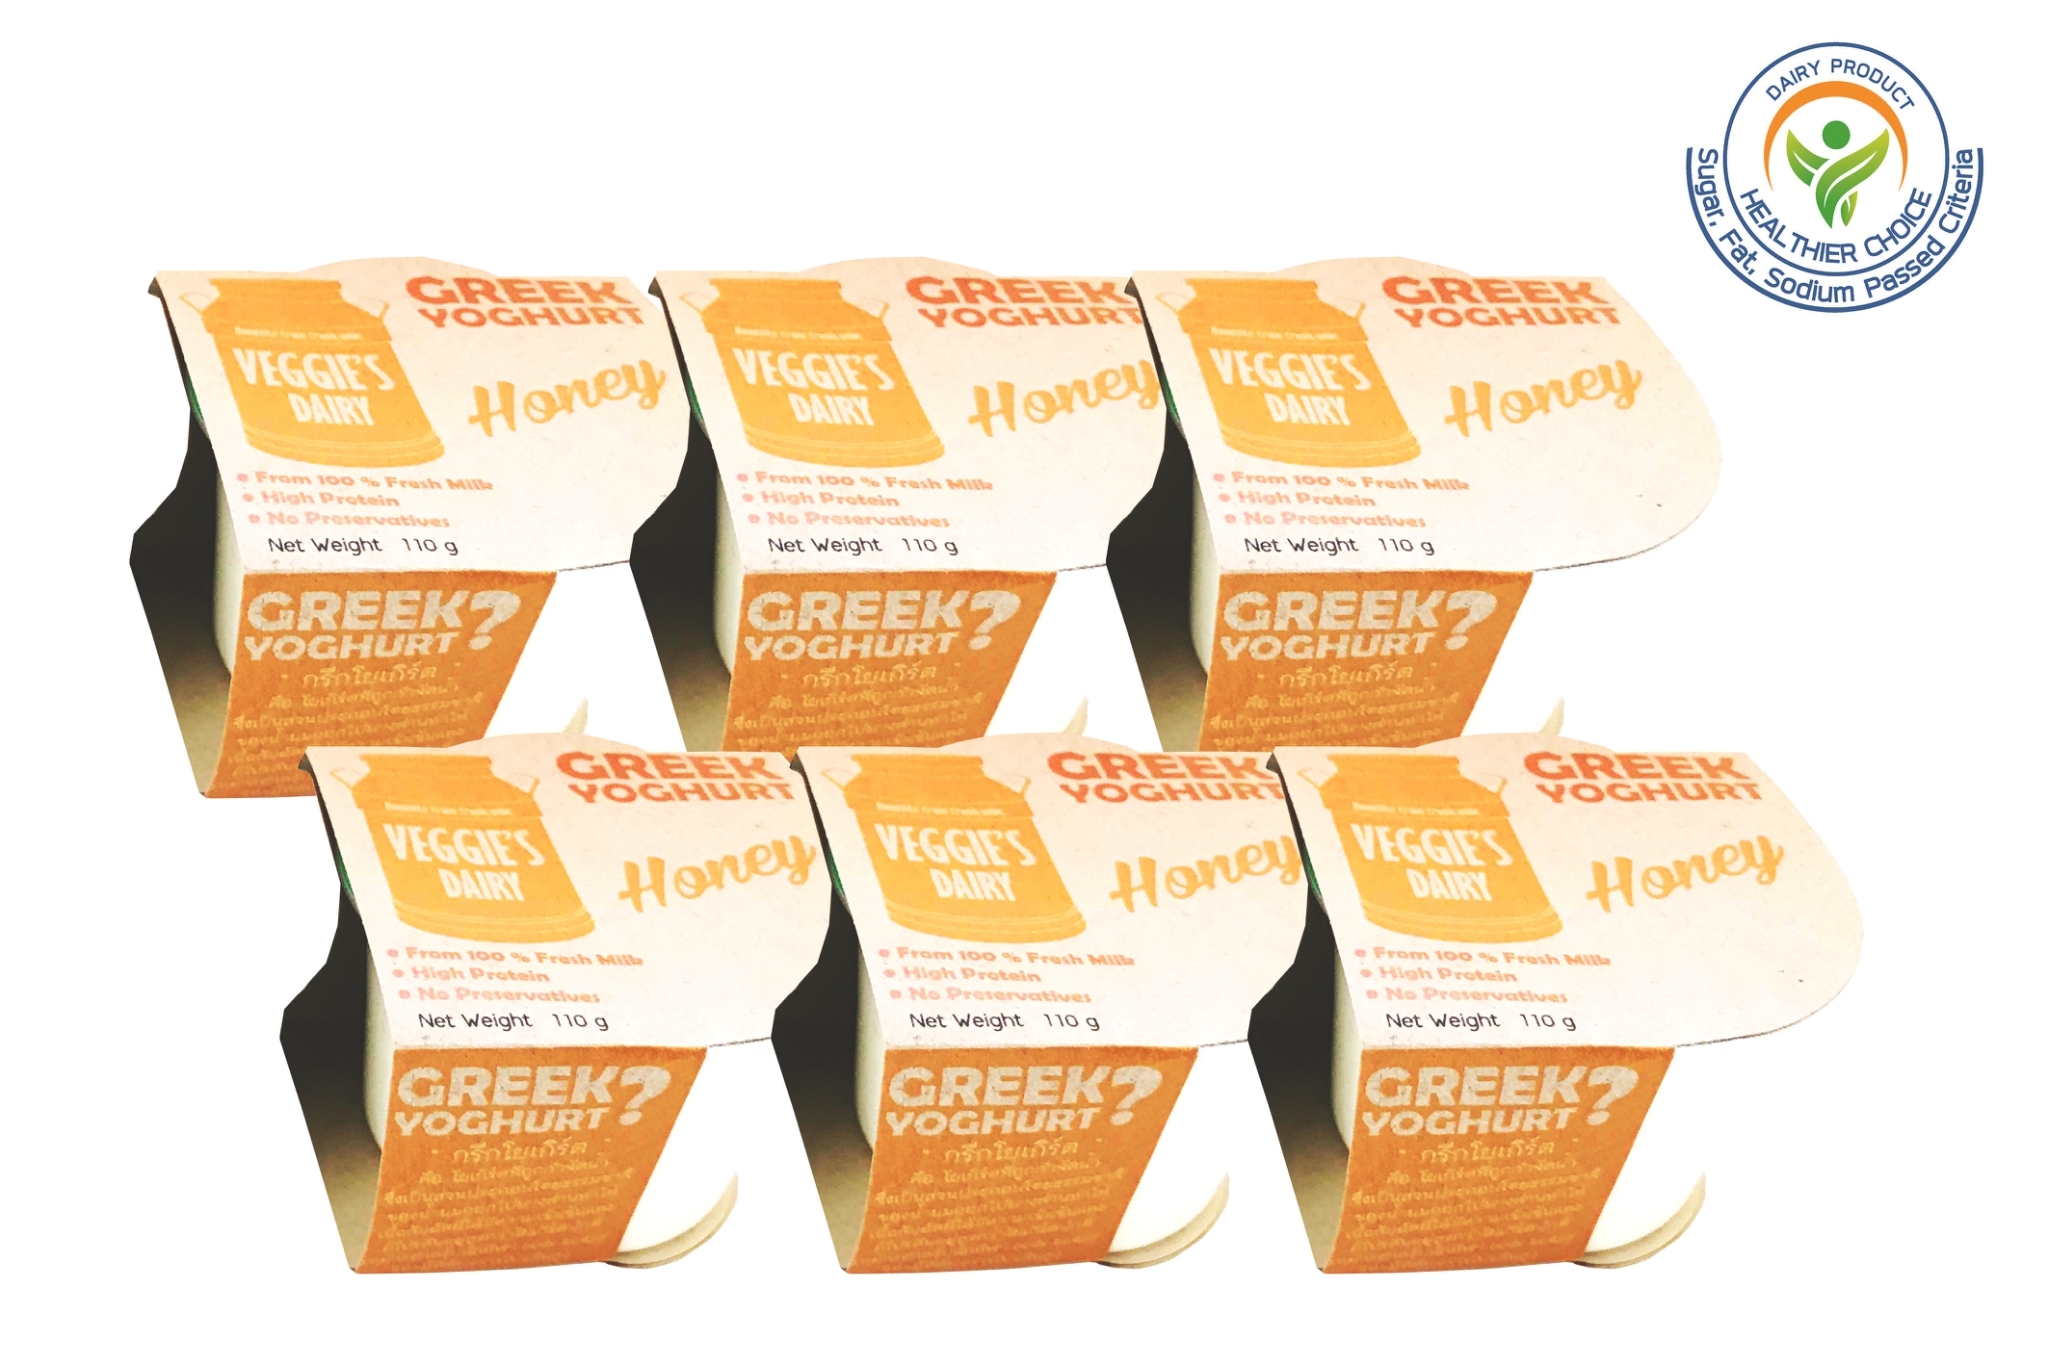 กรีกโยเกิร์ต เวจจี้ส์แดรี่ 100 กรัม แพค 6 ถ้วย น้ำผึ้ง Veggie’s Dairy Greek Yoghurt 100 g 6 Cups Honey flavor